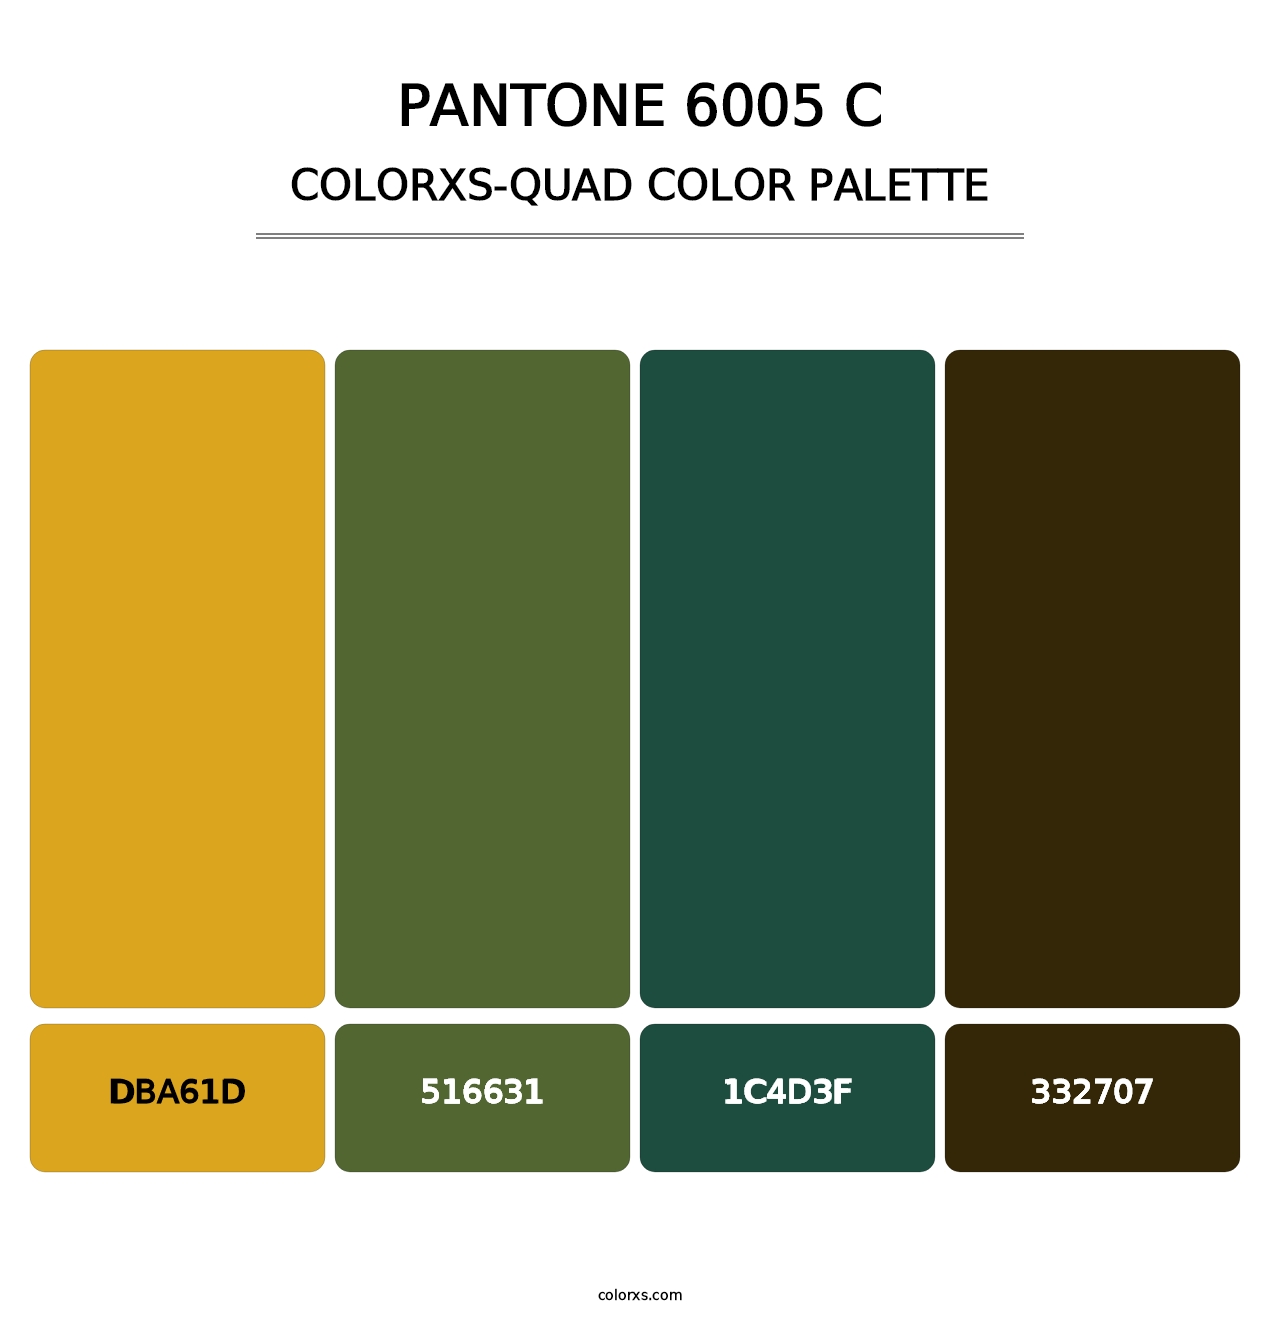 PANTONE 6005 C - Colorxs Quad Palette